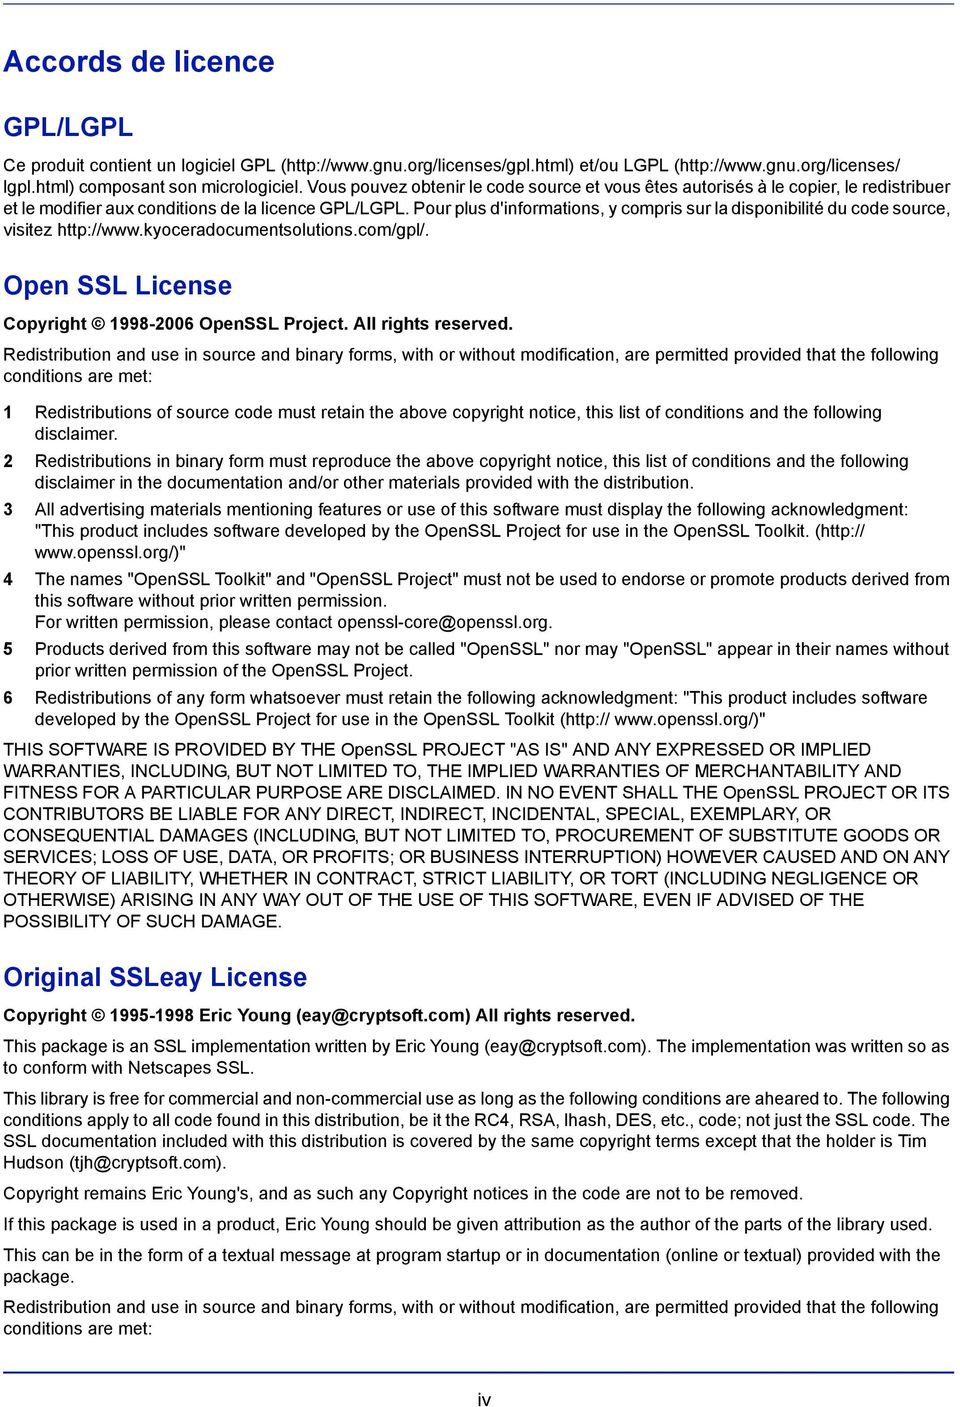 Pour plus d'informations, y compris sur la disponibilité du code source, visitez http://www.kyoceradocumentsolutions.com/gpl/. Open SSL License Copyright 1998-2006 OpenSSL Project.